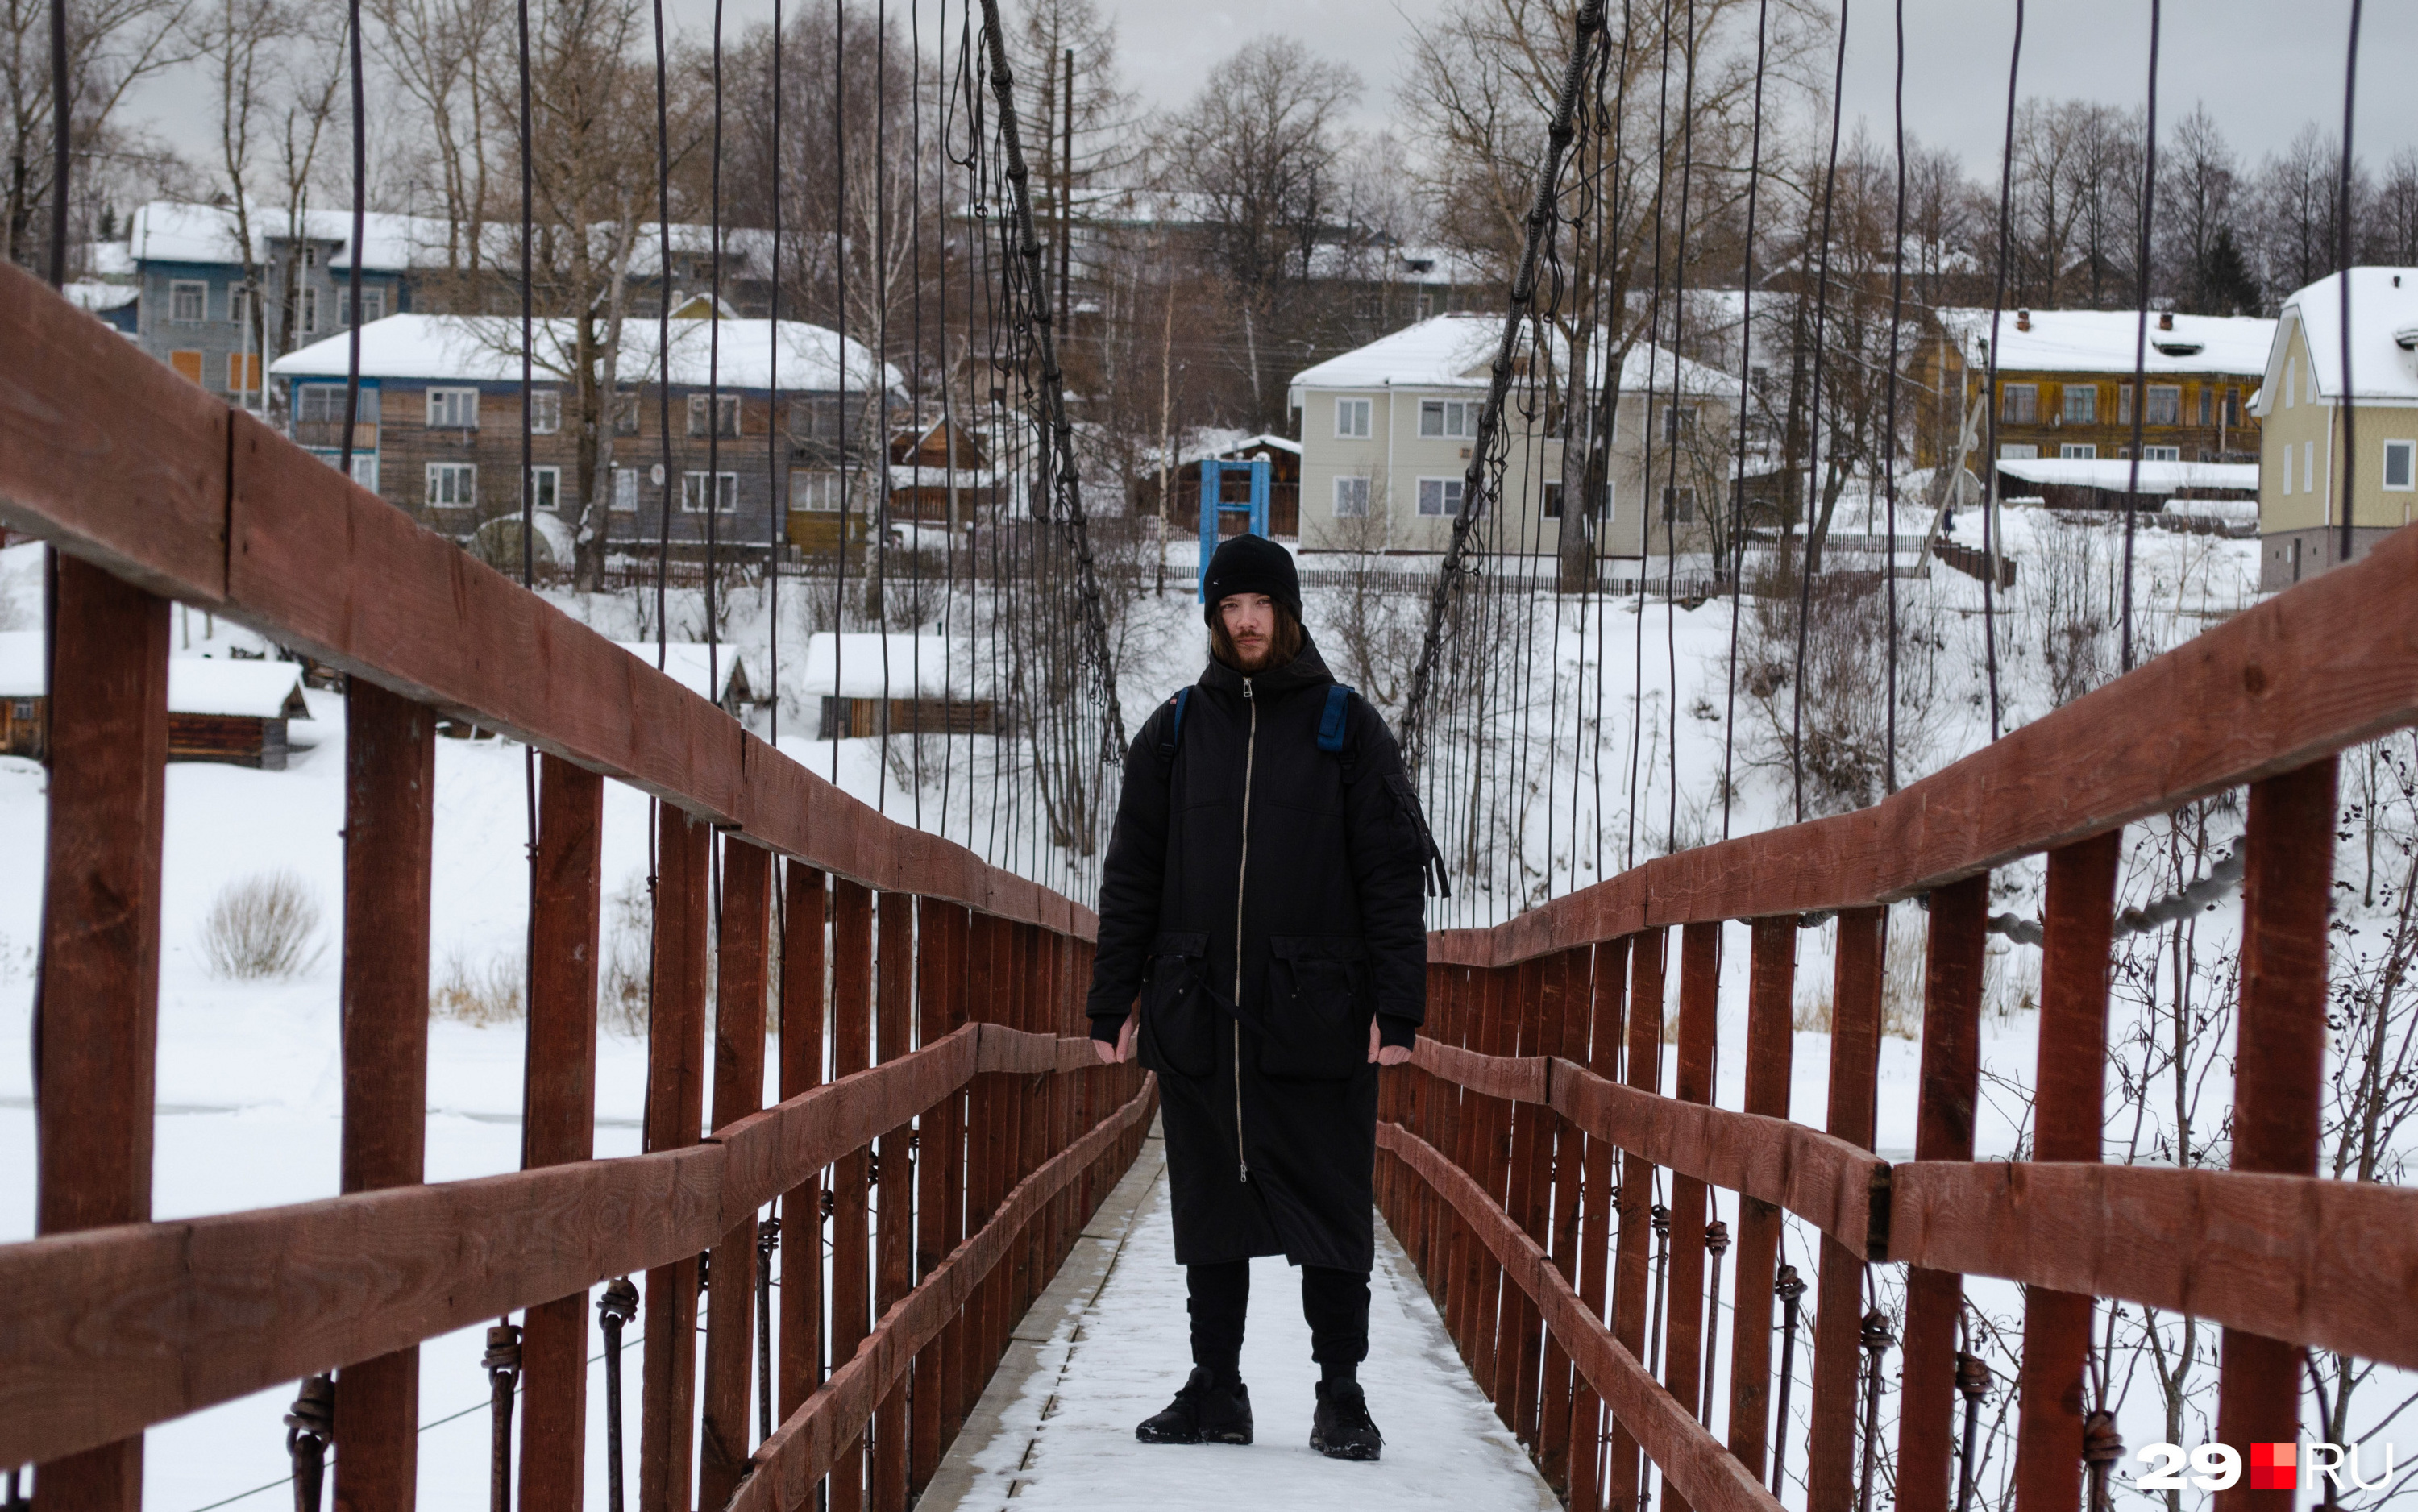 Тот самый скользкий мост в Малиновке, на котором мы сообщили местной жительнице про визит Путина